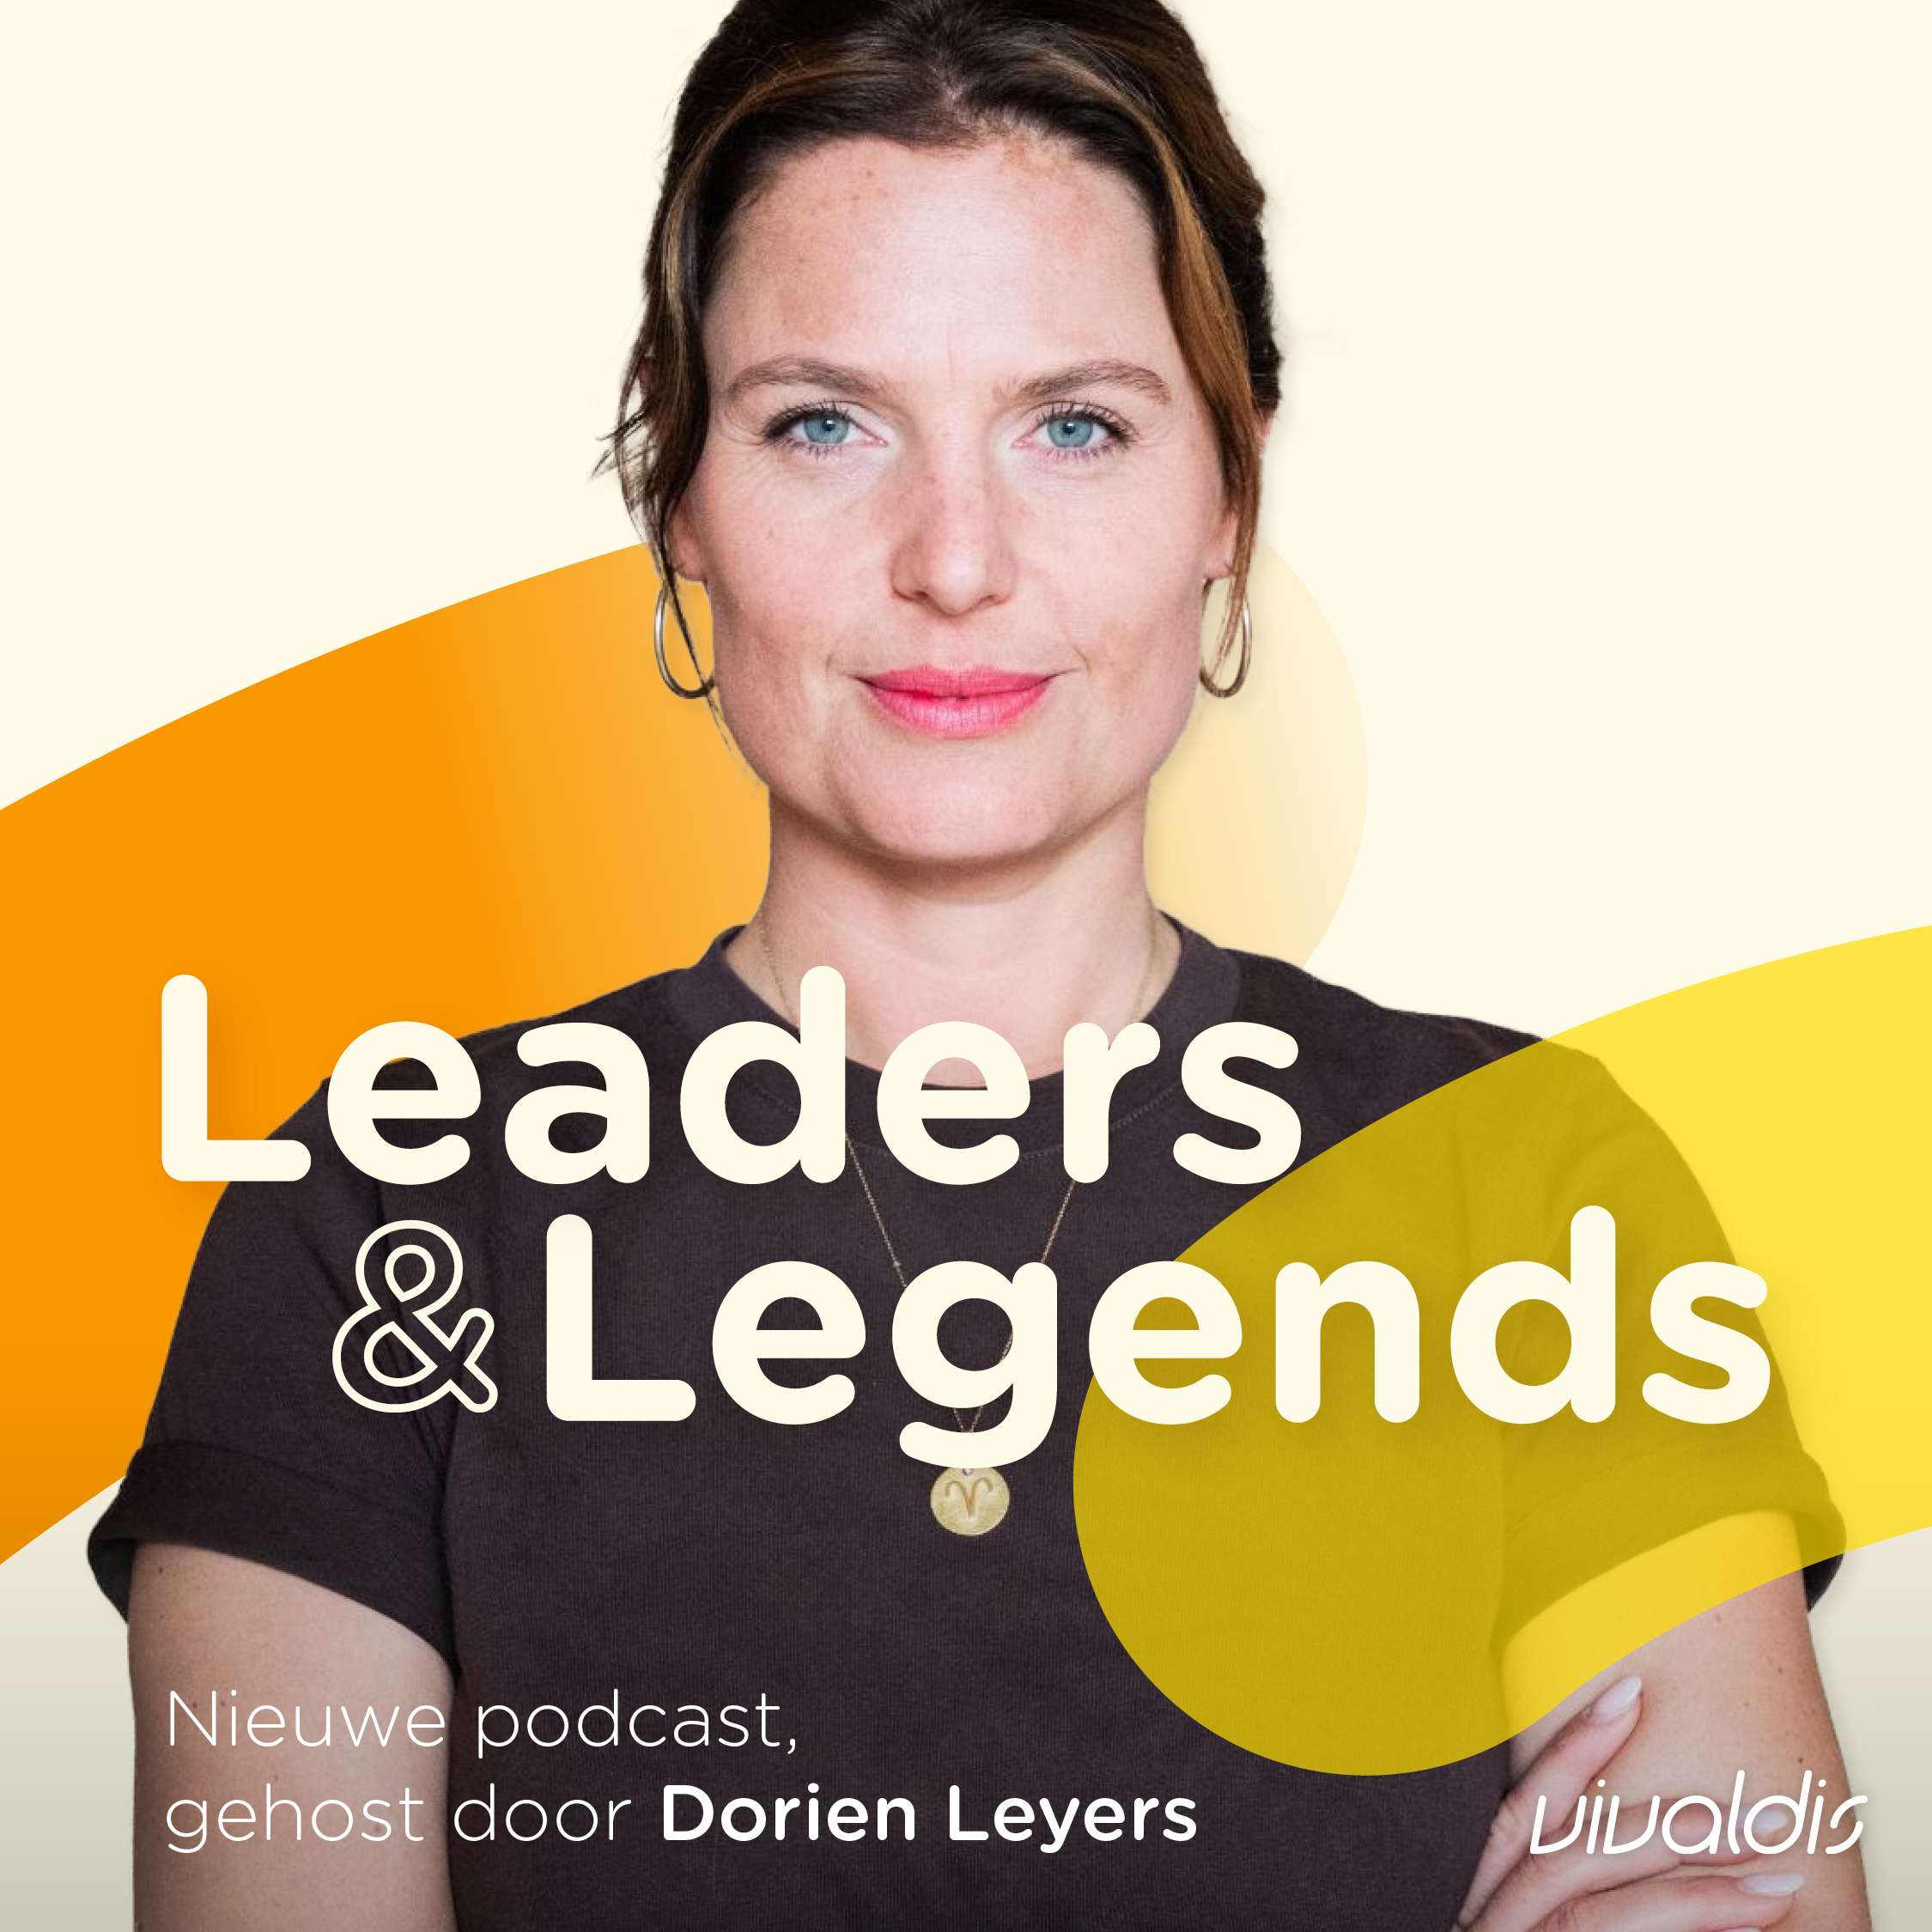 Leaders & Legends, de nieuwe podcast van Vivaldis, gehost door Dorien Leyers